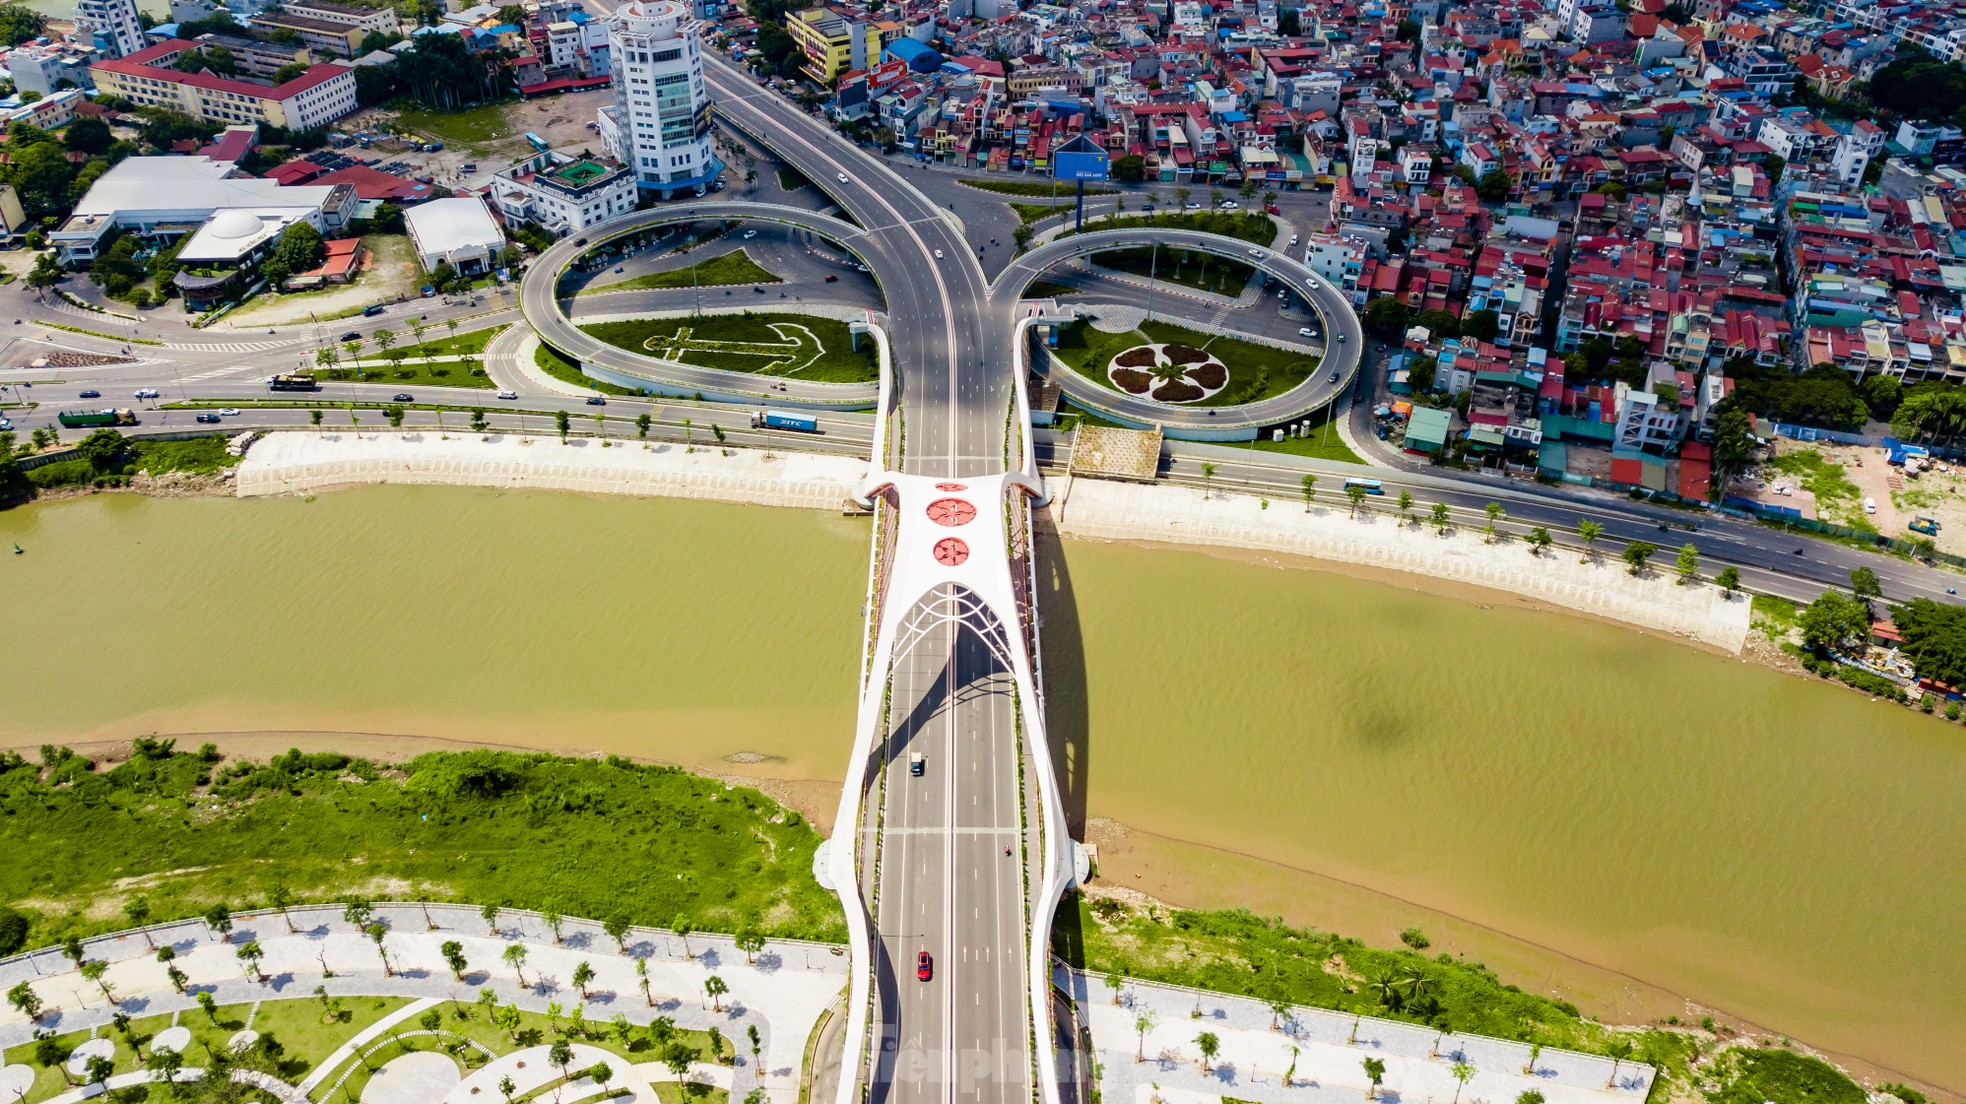 Ấn tượng với vẻ đẹp của hai cây cầu biểu tượng của TP Hải Phòng - Ảnh 7.